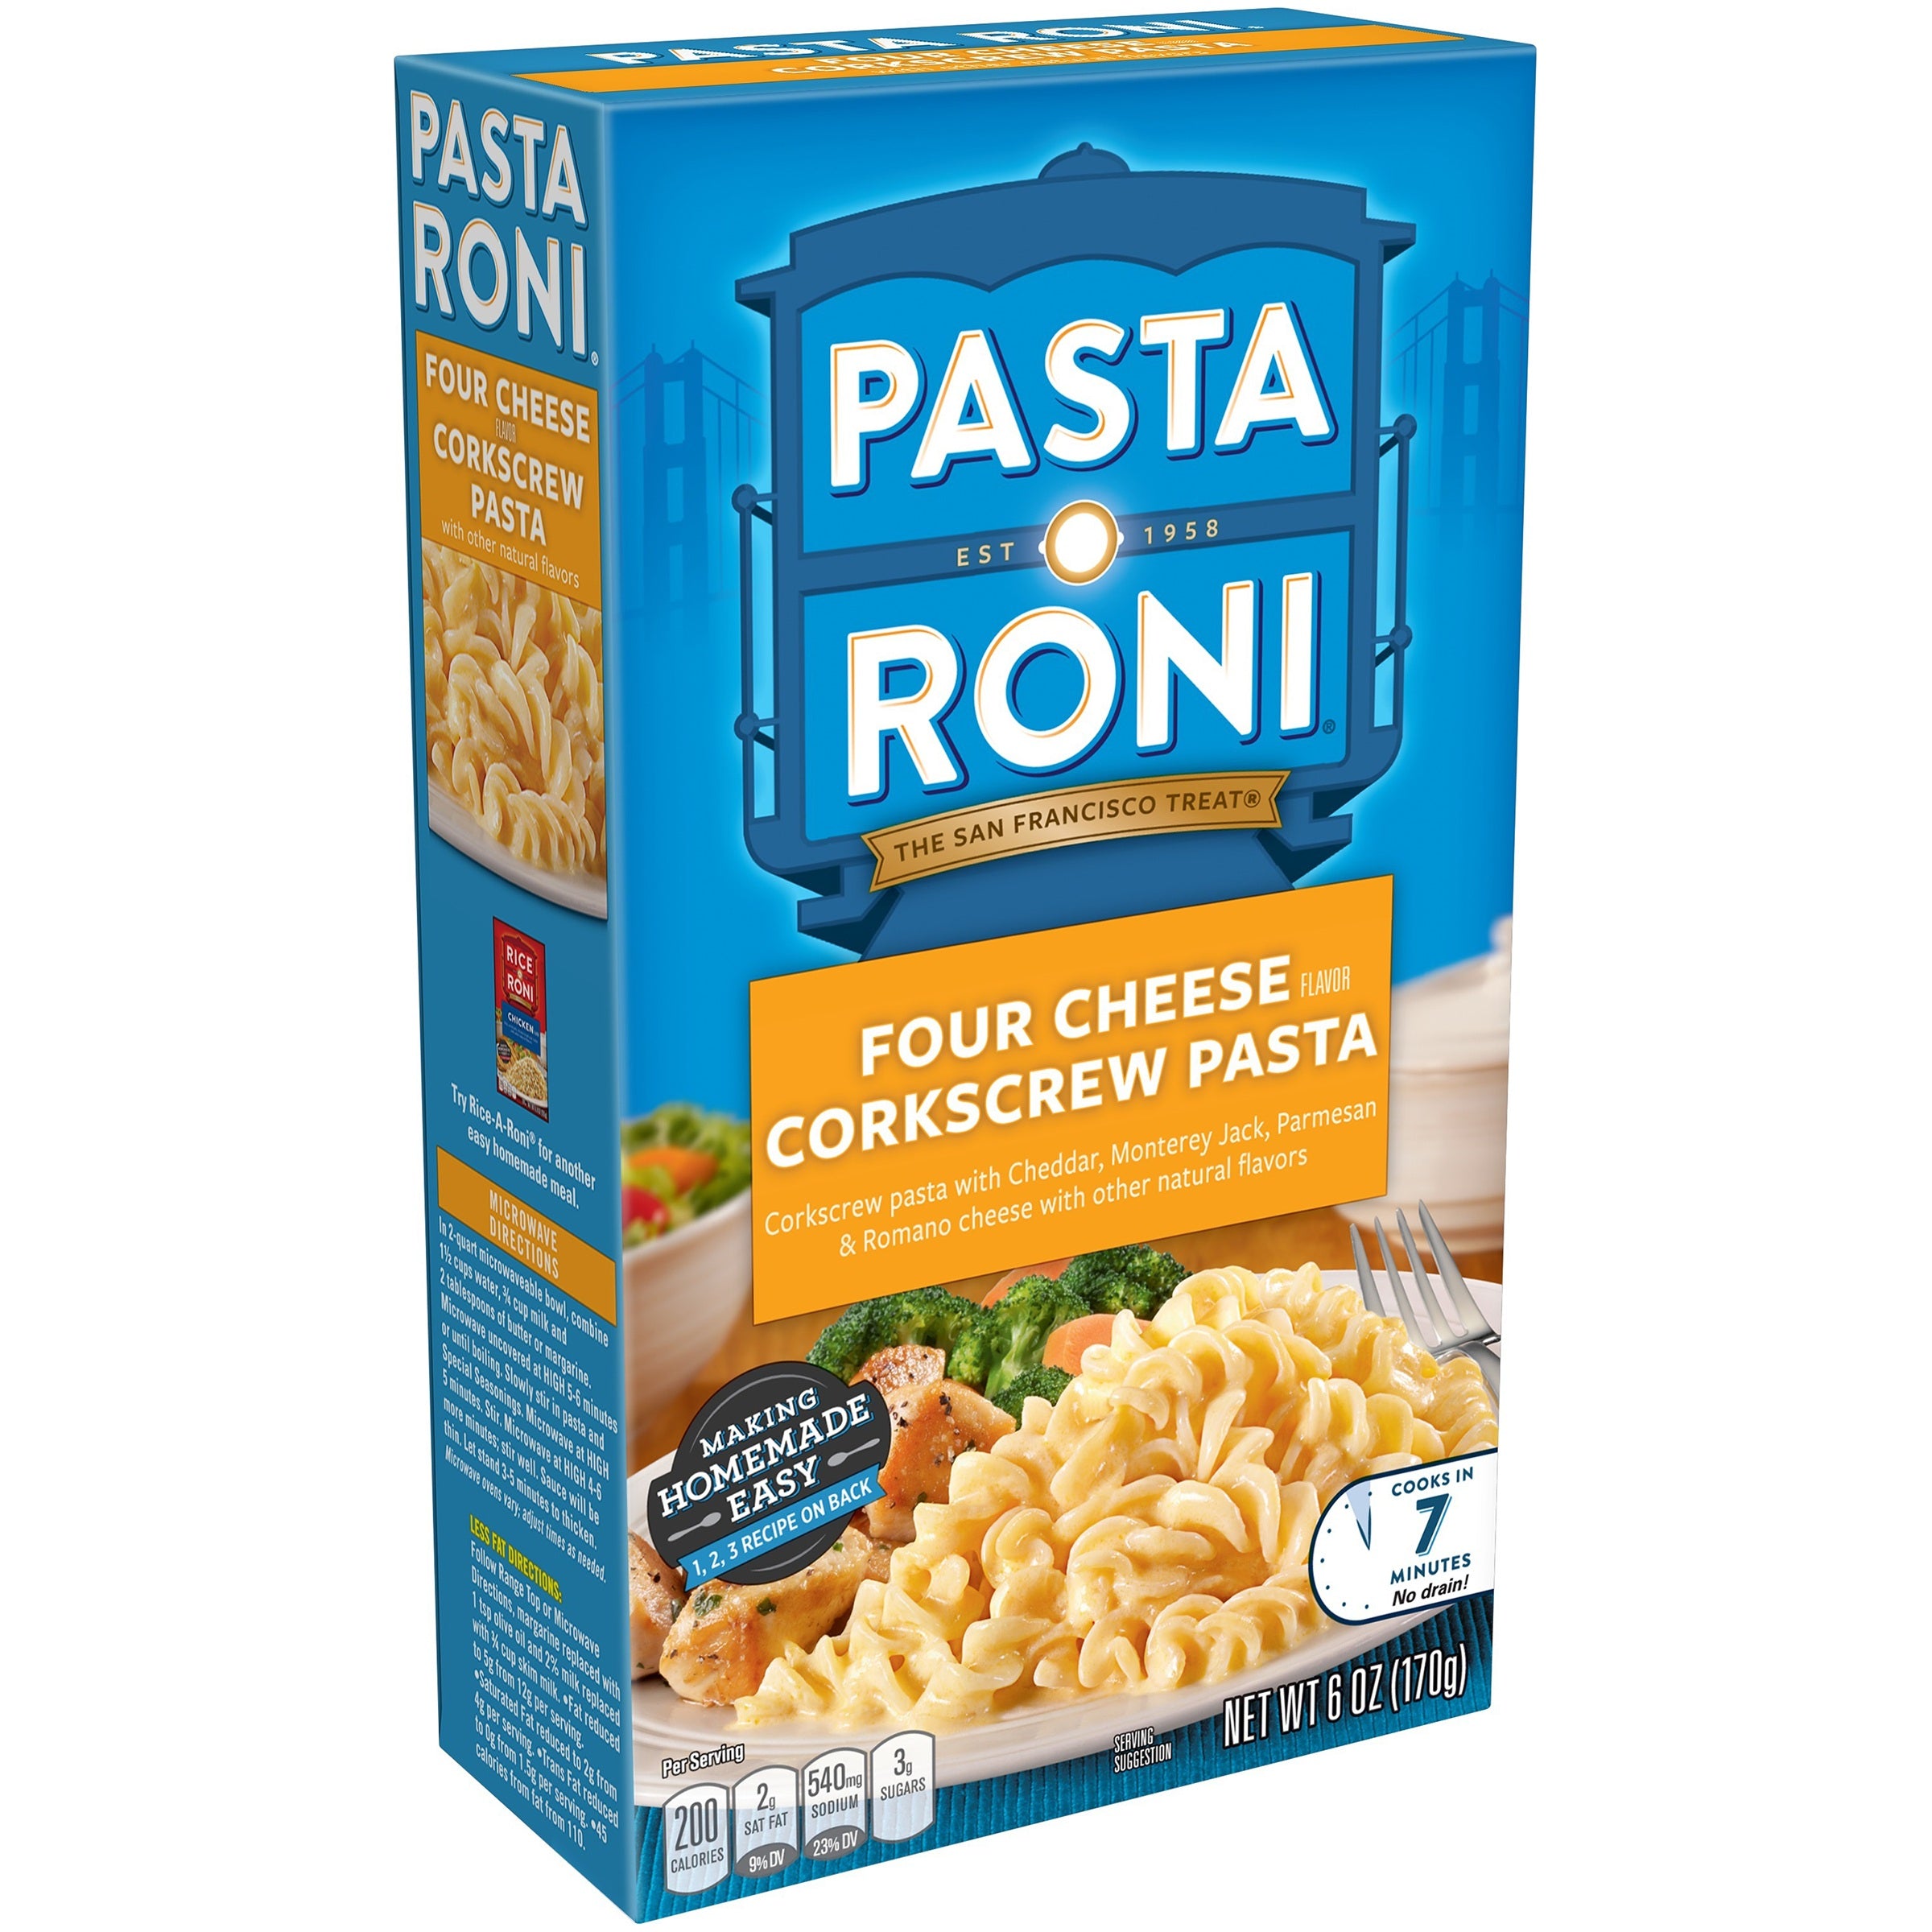 (8 Pack) Pasta Roni Four Cheese Corkscrew Pasta 6 oz. Box